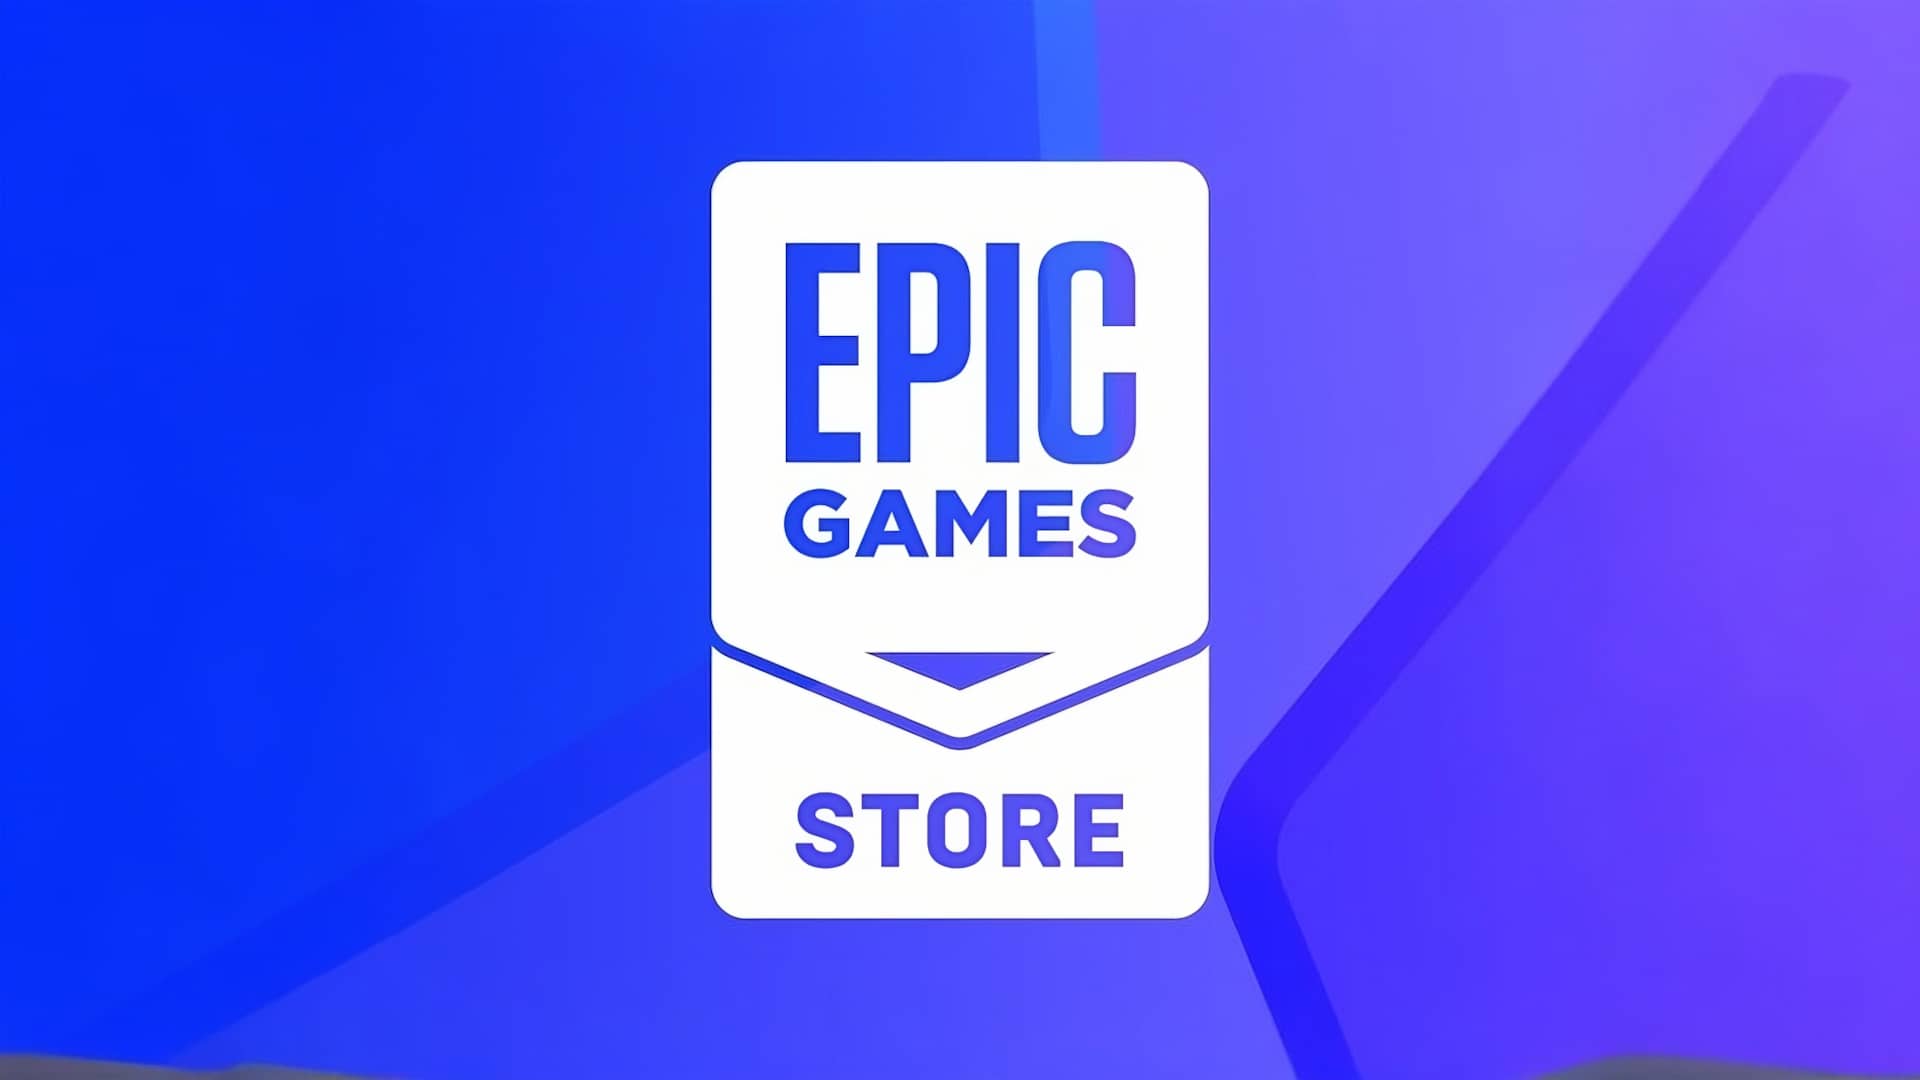 Exame Informática  Epic quer trazer jogos antigos para a sua loja online